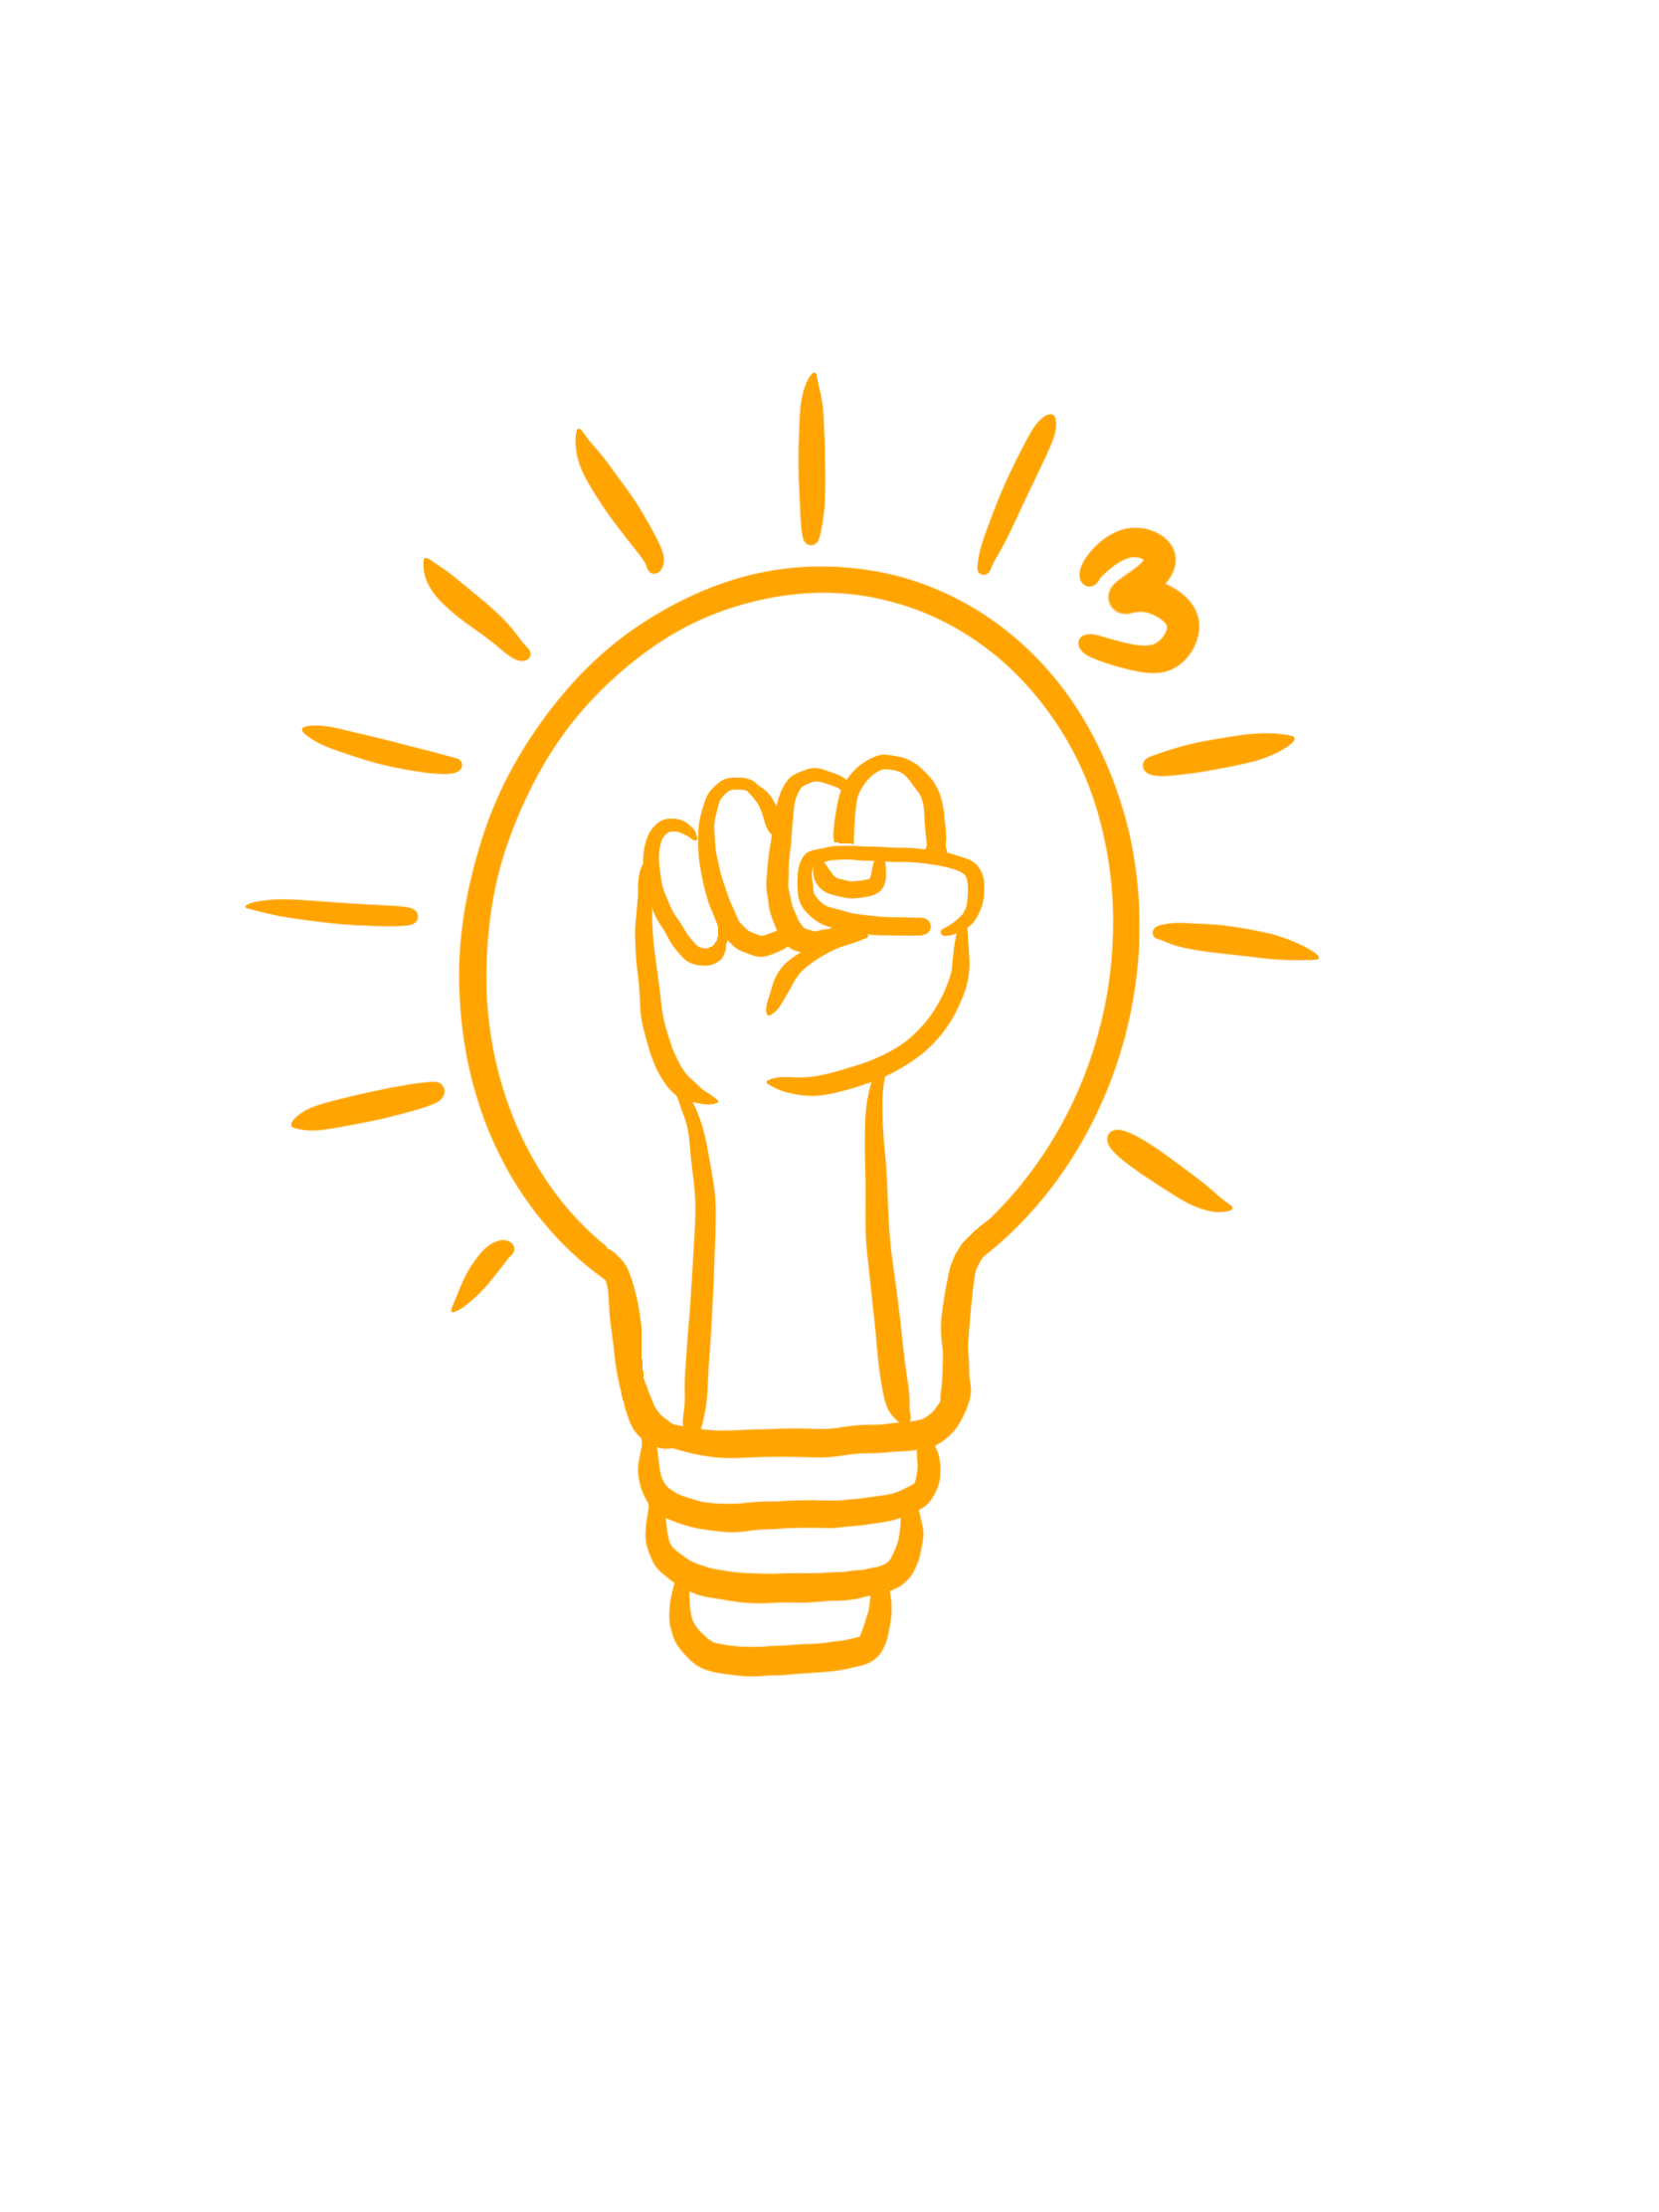 IDEA 3 Logo